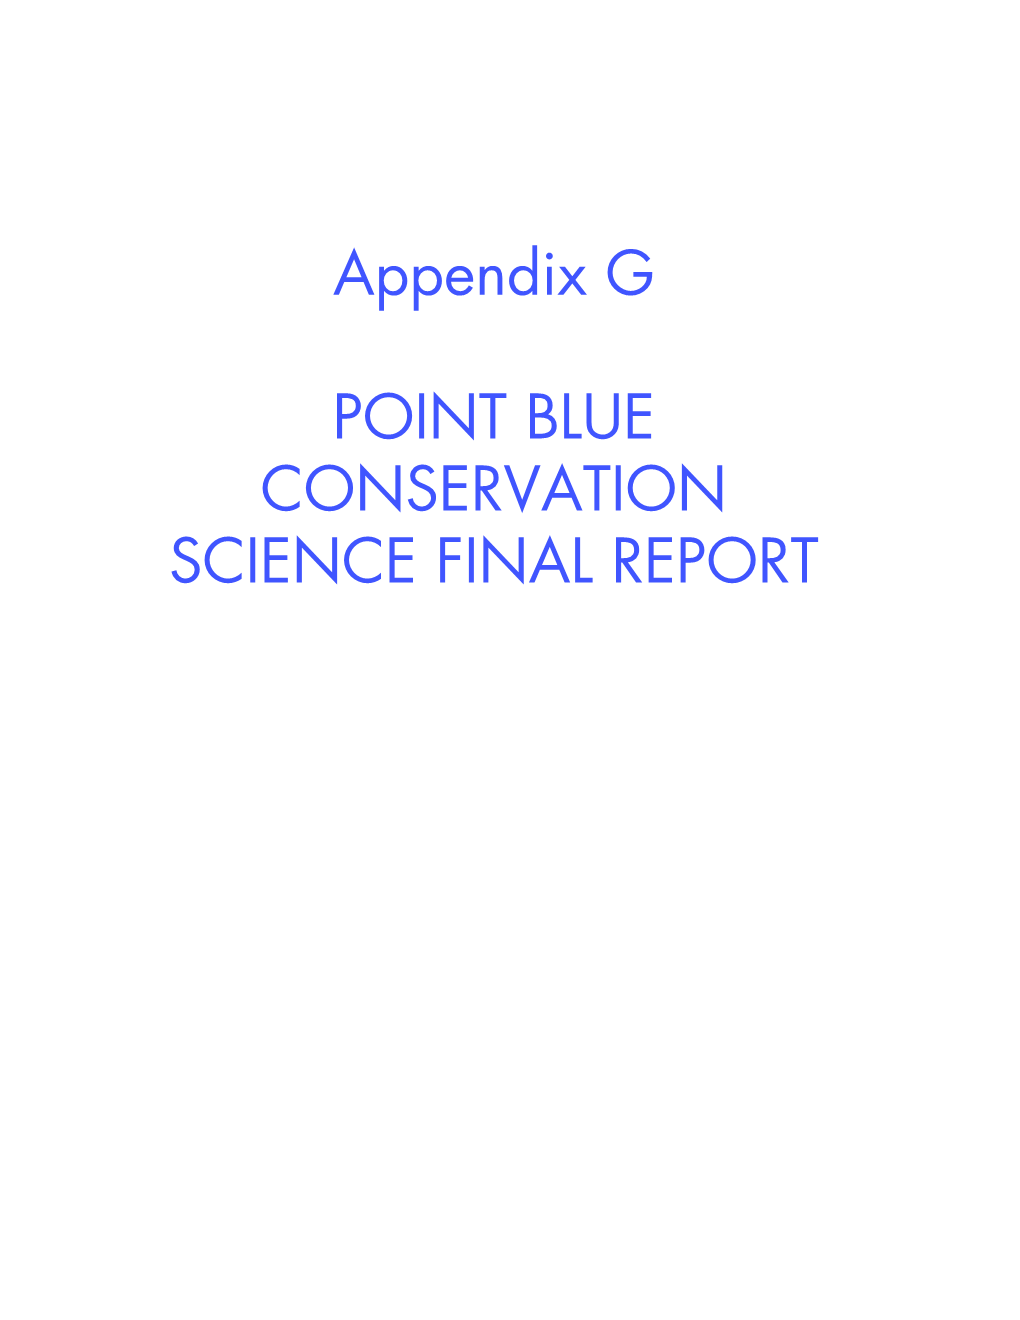 Appendix G POINT BLUE CONSERVATION